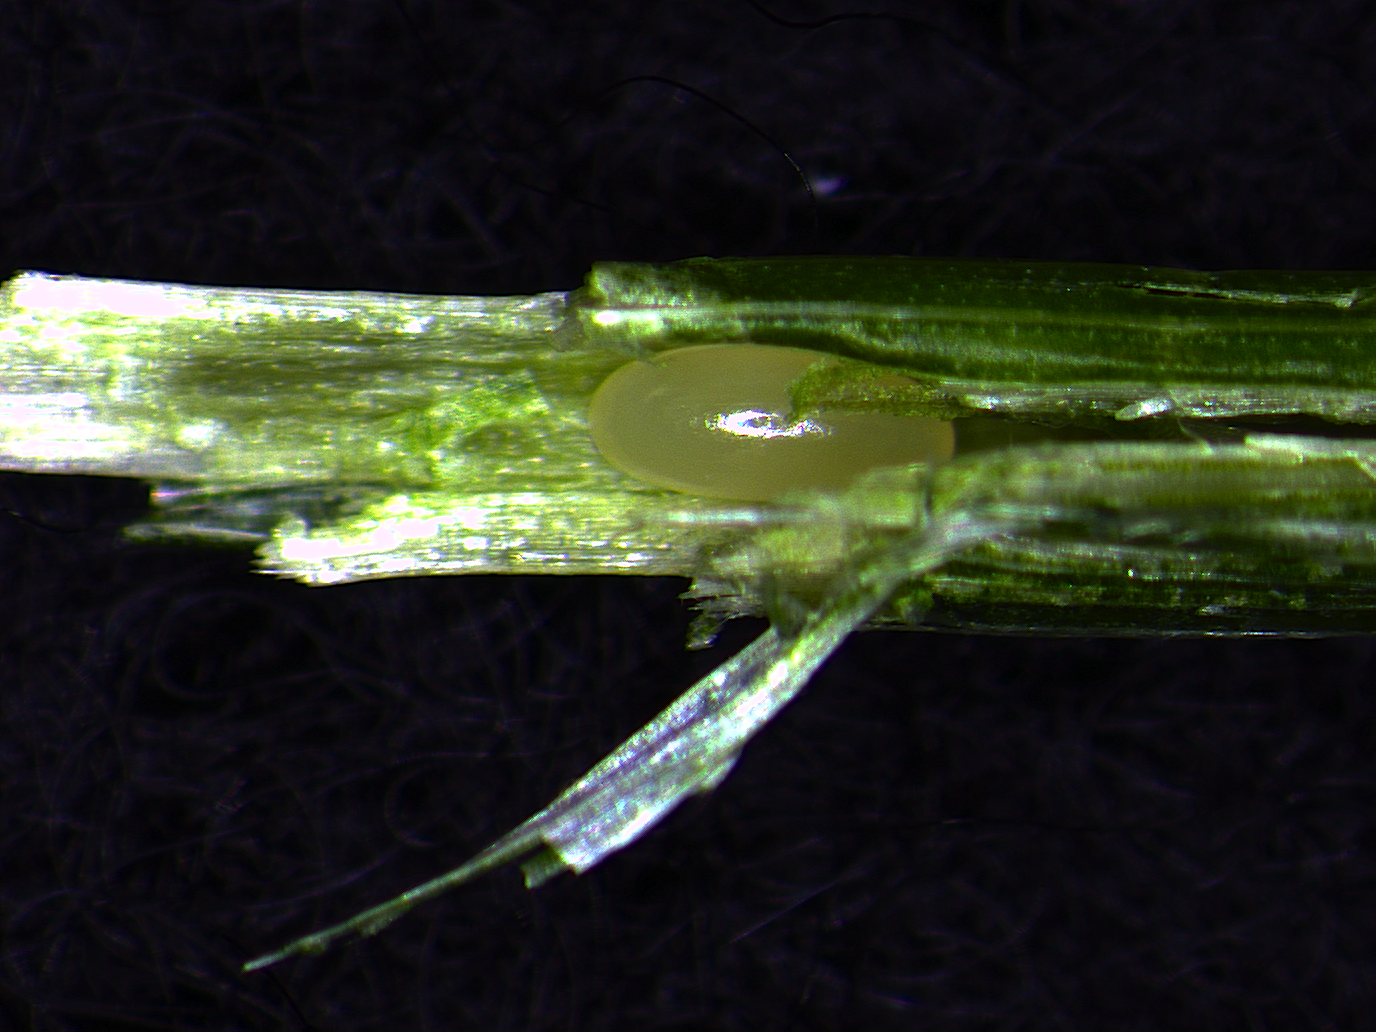  Figure 4. Bluegrass billbug egg inside the stem of a Kentucky bluegrass plant.